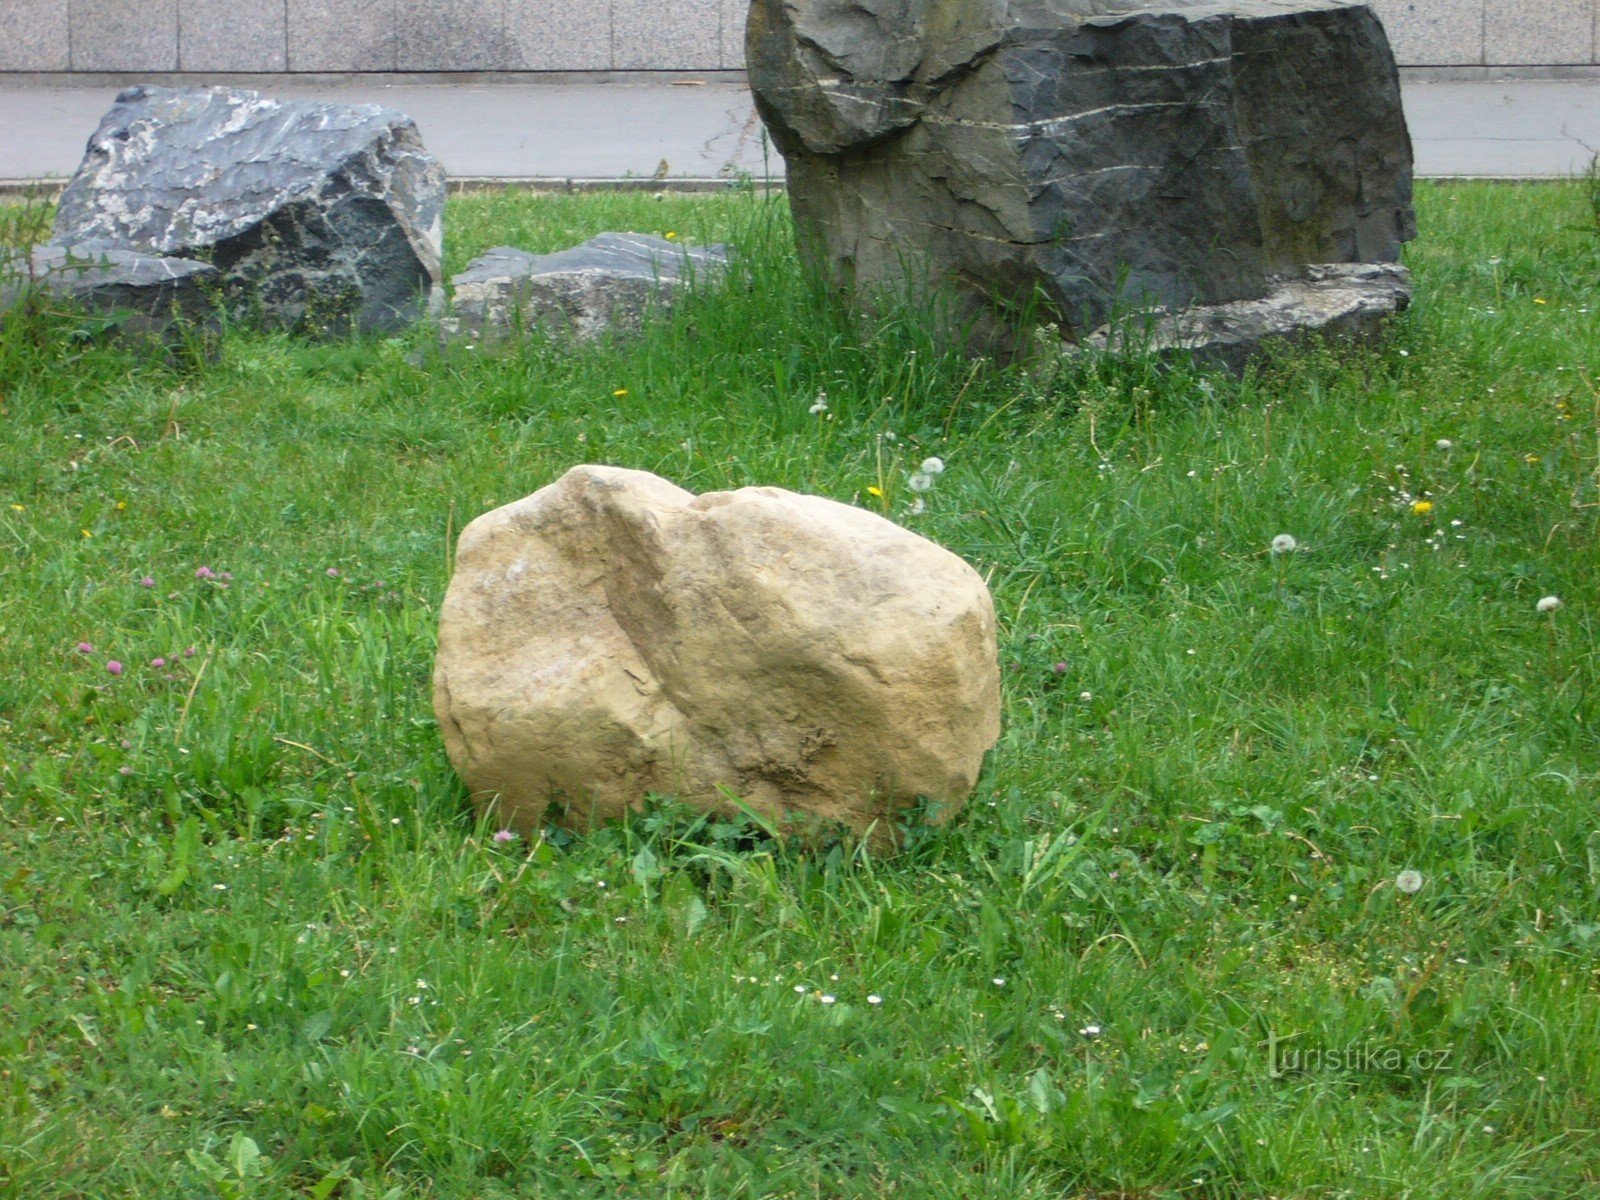 errant boulder in front of the entrance